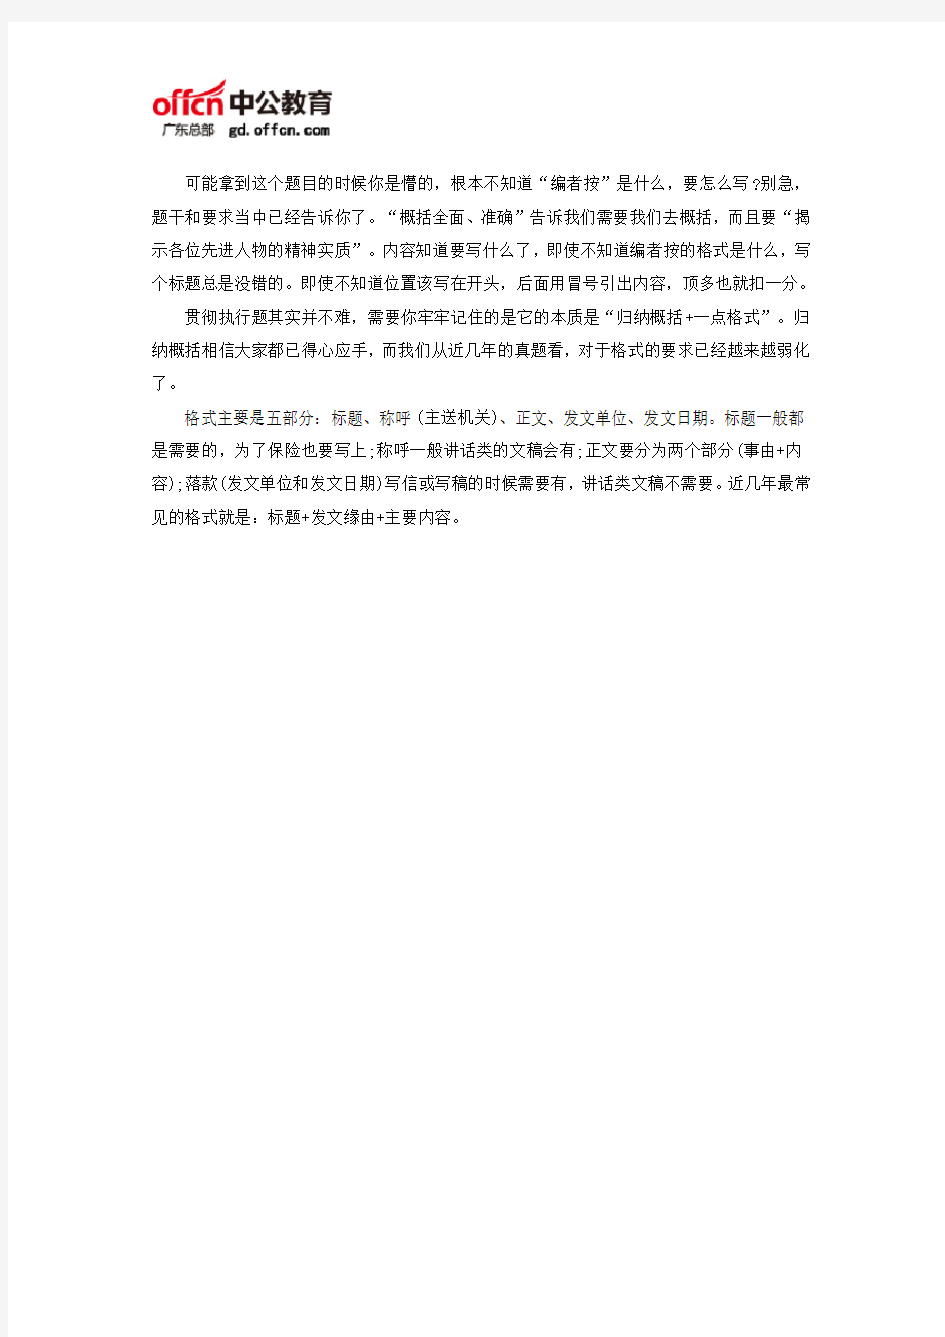 2018广东省公务员考试申论备考：窥视题目要求中暗藏的“玄机”